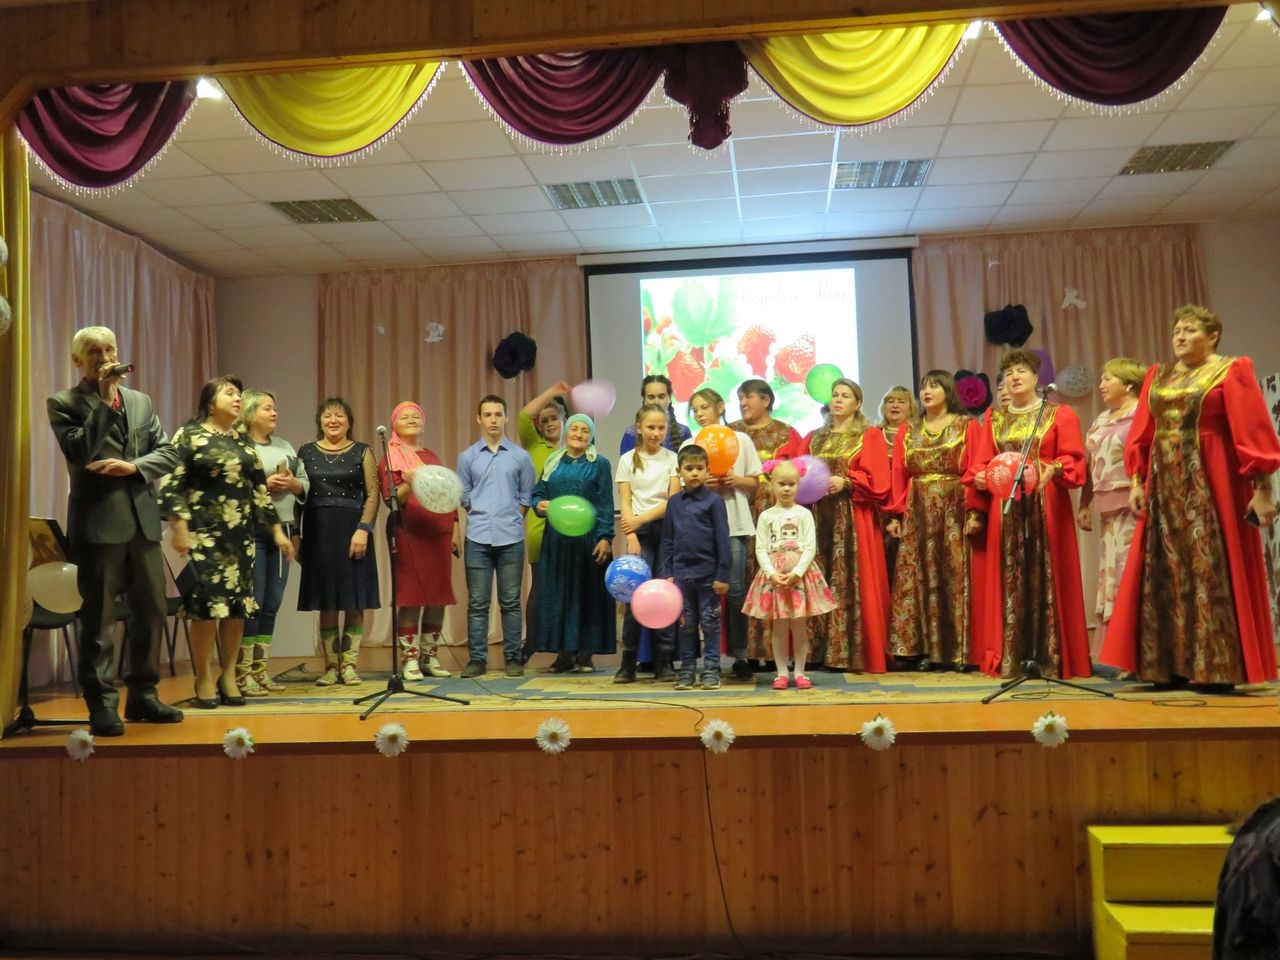 Фоторепортаж: 24 ноября в Ялкынском СДК прошел праздничный концерт под названием "СВЕТЛОЕ ИМЯ - МАМА!"